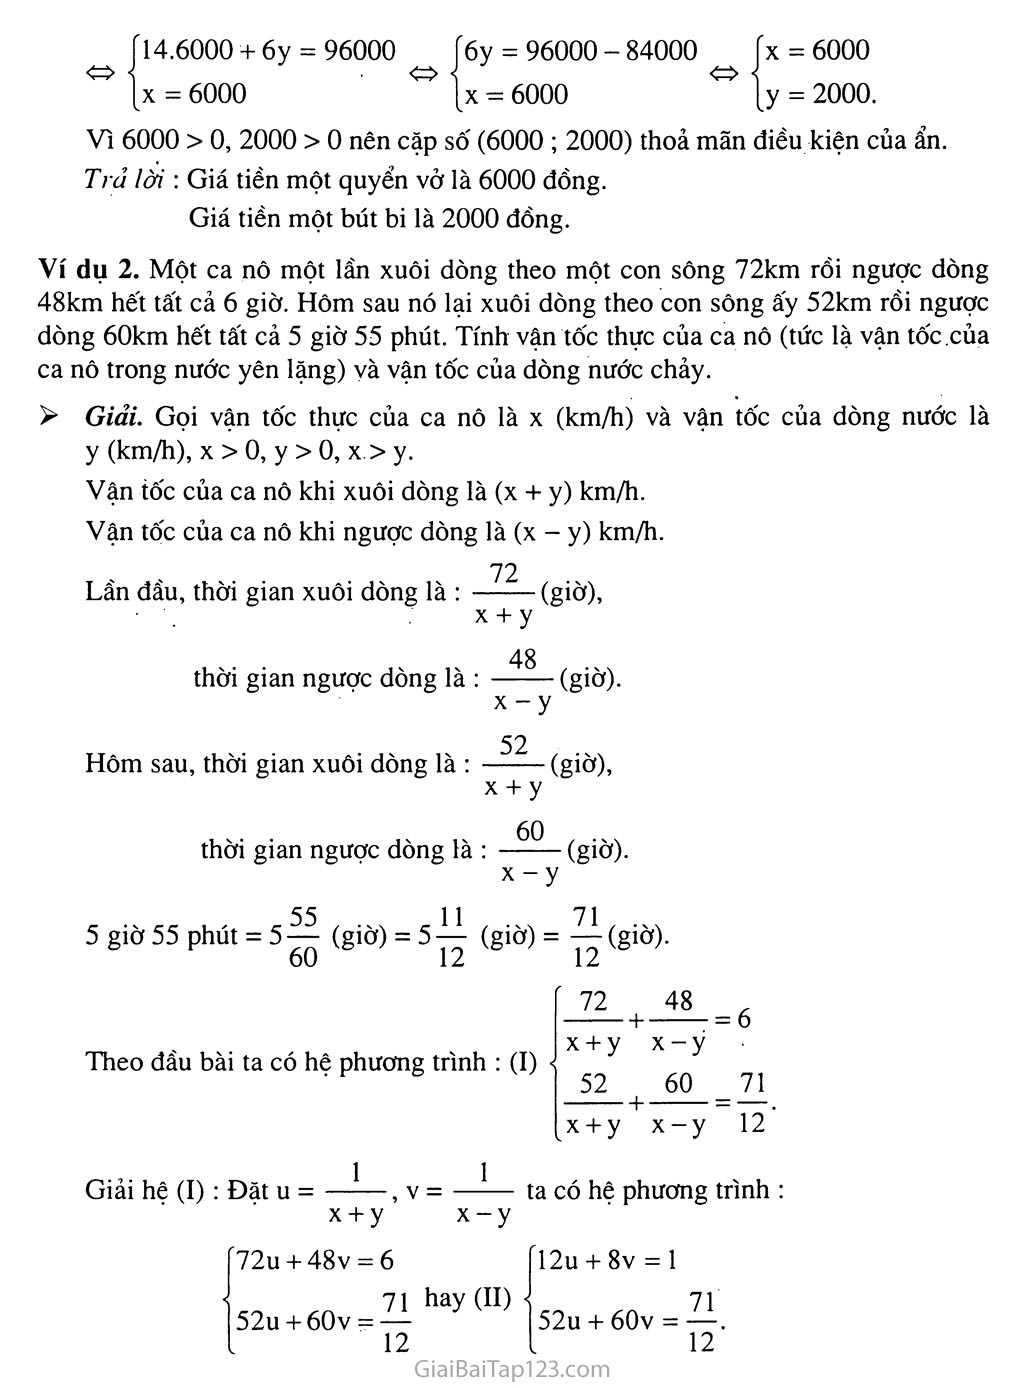 Bài 5. Giải bài toán bằng cách lập hệ phương trình trang 2